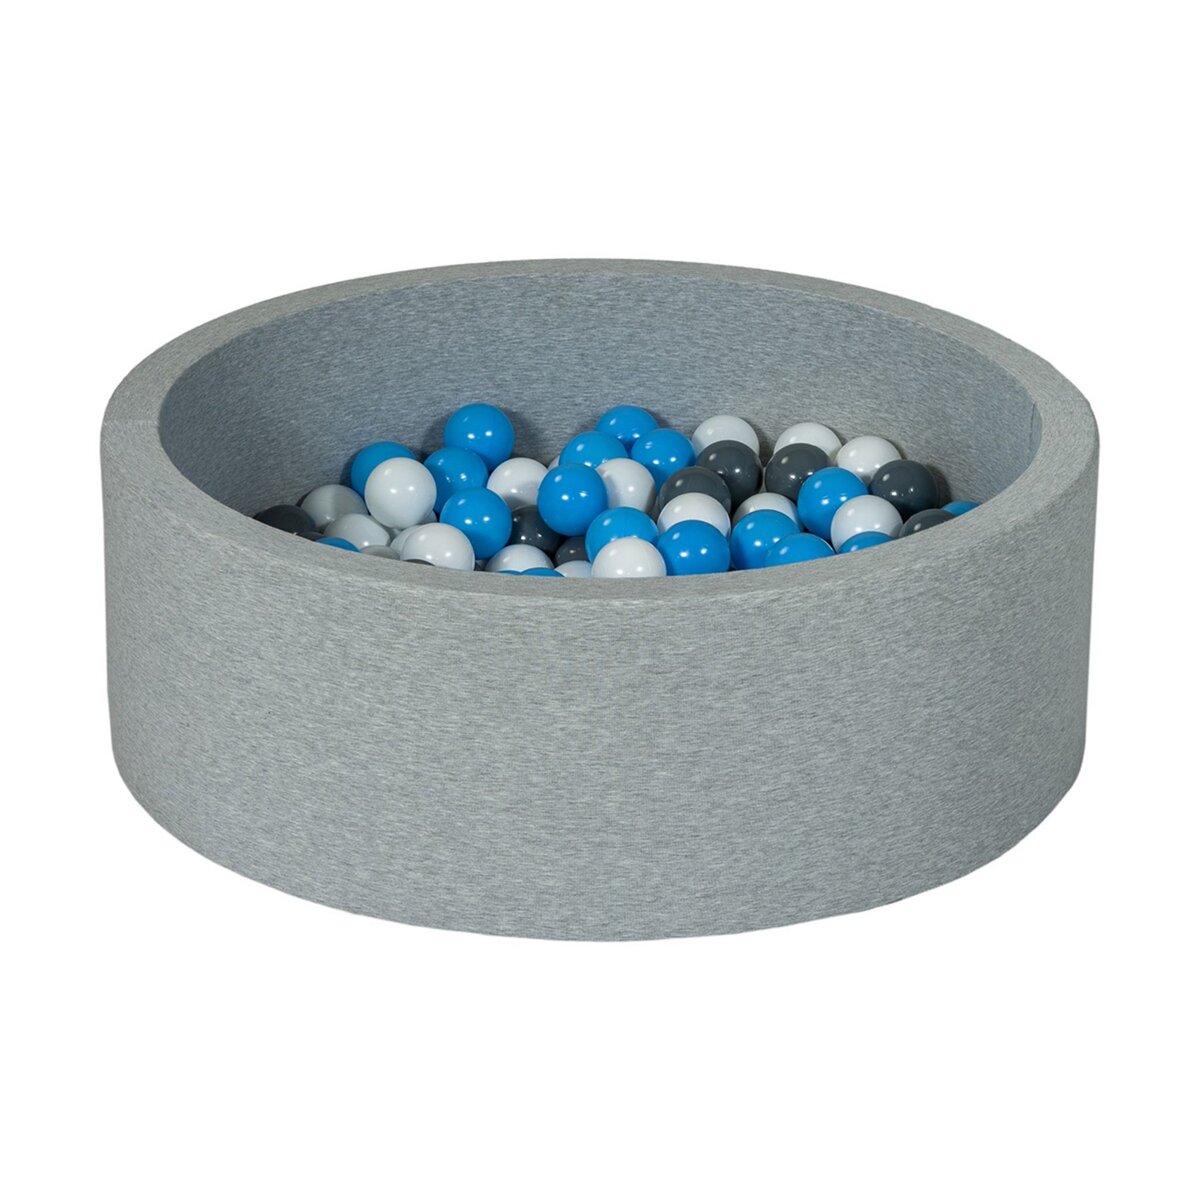  Piscine à balles Aire de jeu + 150 balles blanc, gris, bleu clair